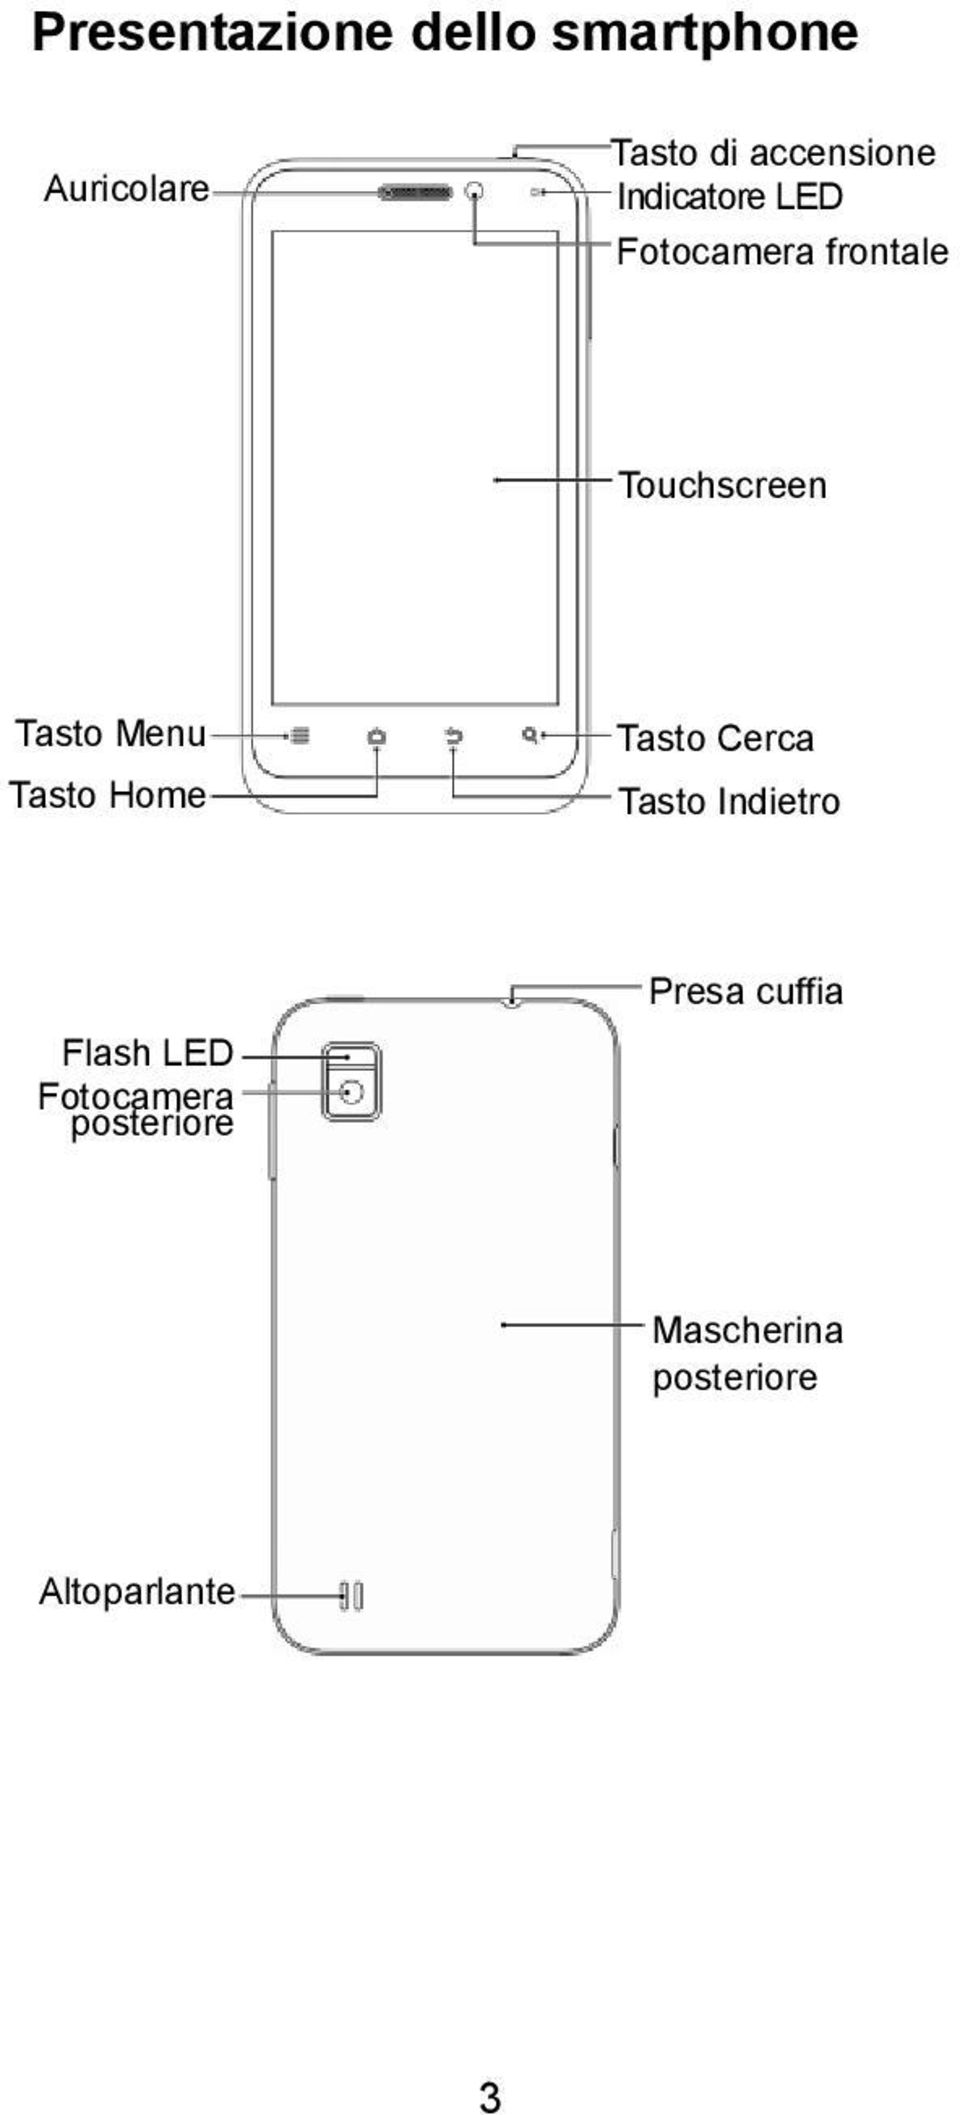 Tasto Menu Tasto Home Tasto Cerca Tasto Indietro Flash LED